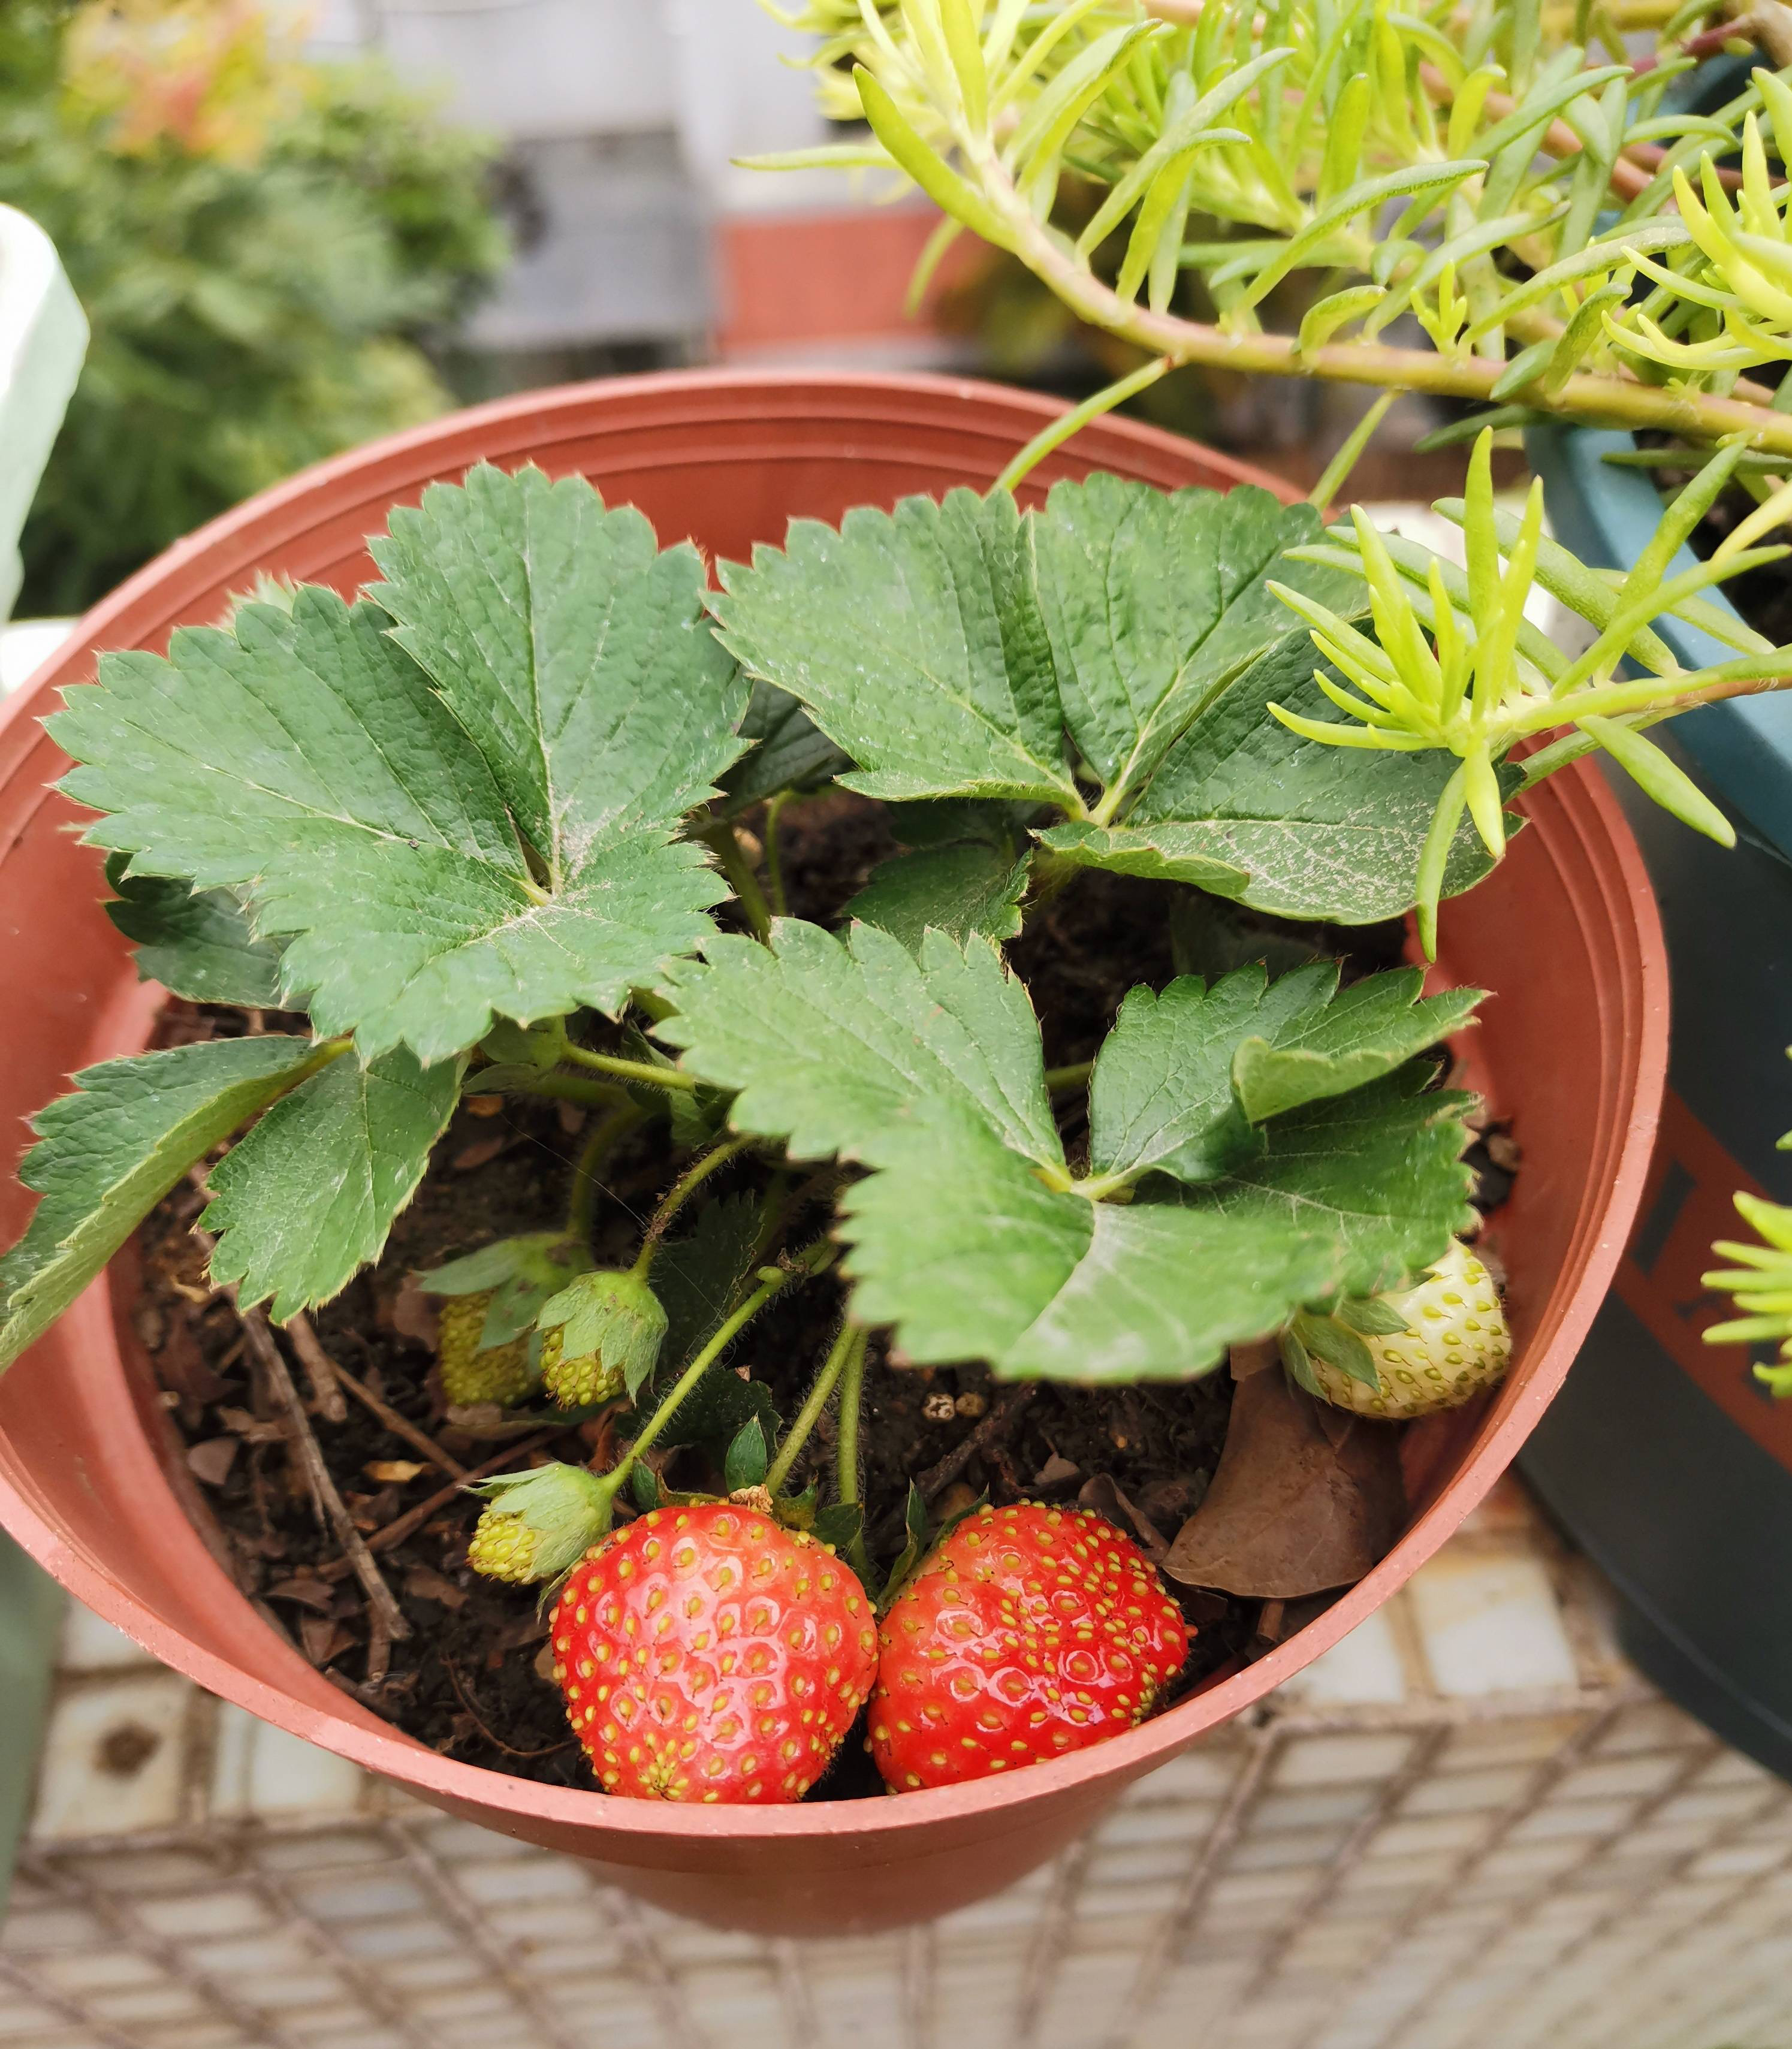 阳台这样养草莓,每一盆结果更多,红彤彤的果子,不停采摘